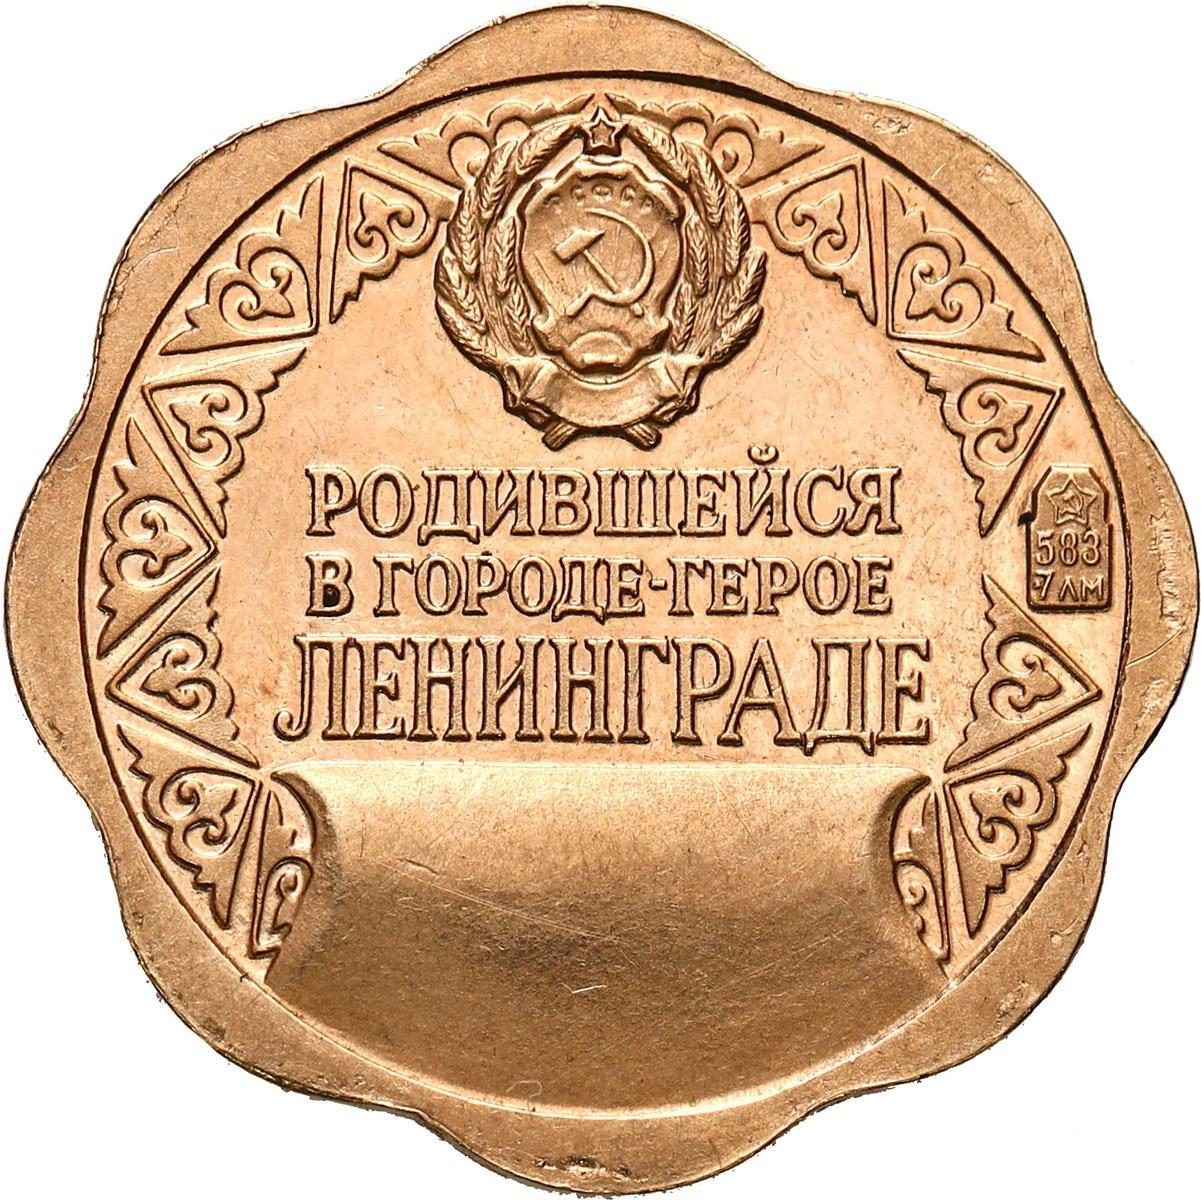 Rosja. Złoty medalik na Chrzest - Złoto